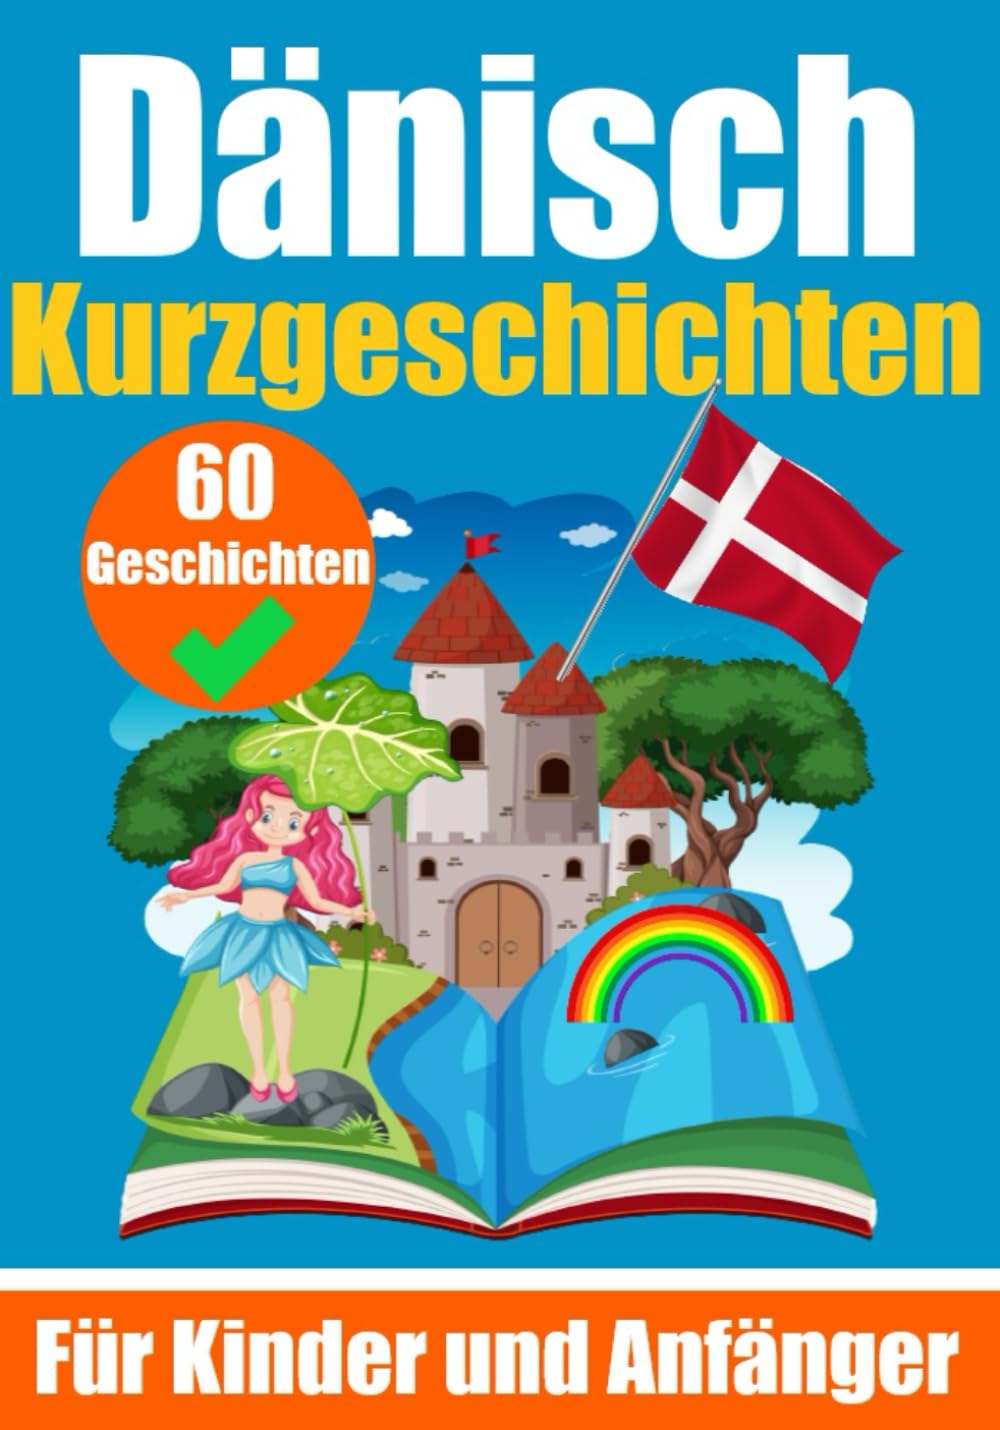 60 Kurzgeschichten auf Dänisch | Ein zweisprachiges Buch auf Deutsch und Dänisch | Ein Buch zum Erlernen der Dänischen Sprache für Kinder und Anfänger